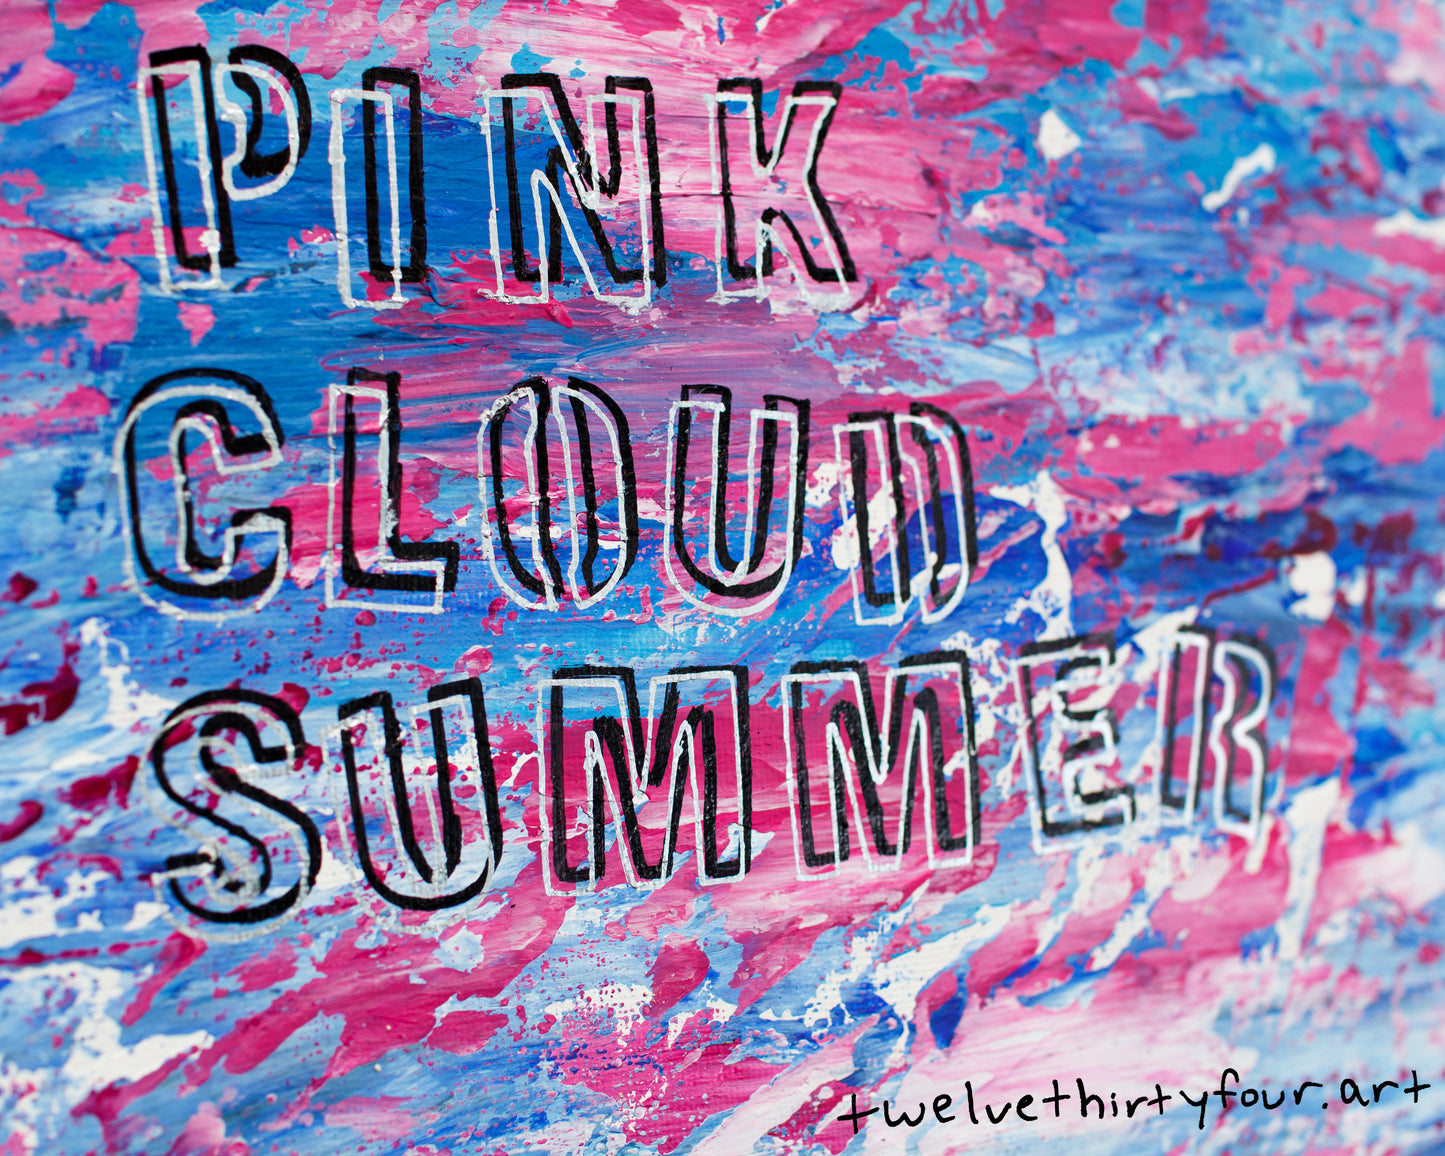 Pink Cloud Summer